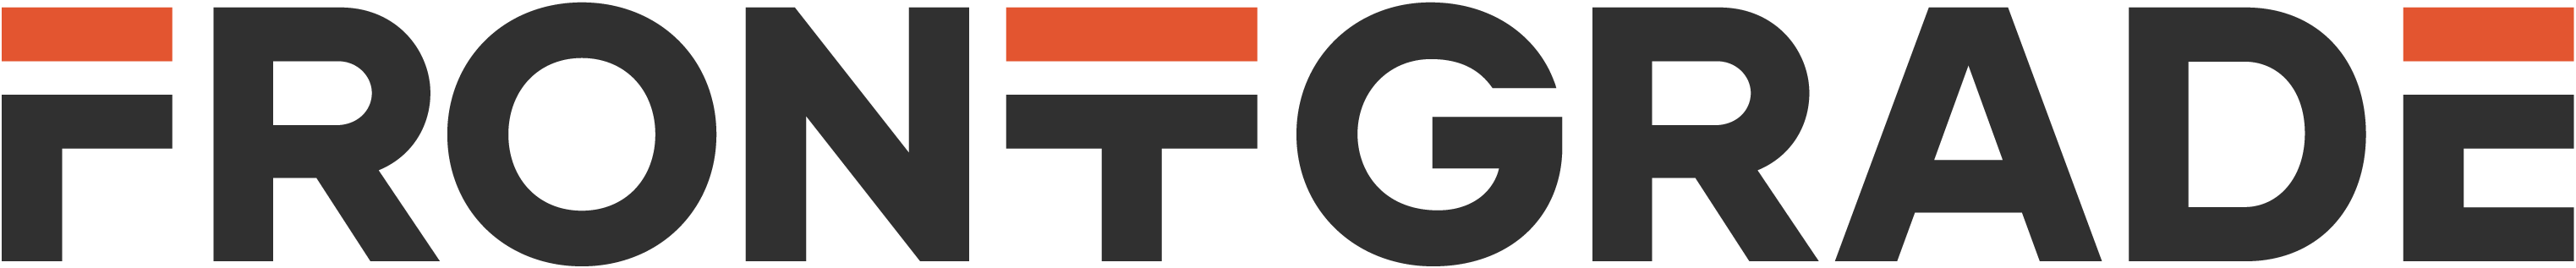 Frontgrade logo